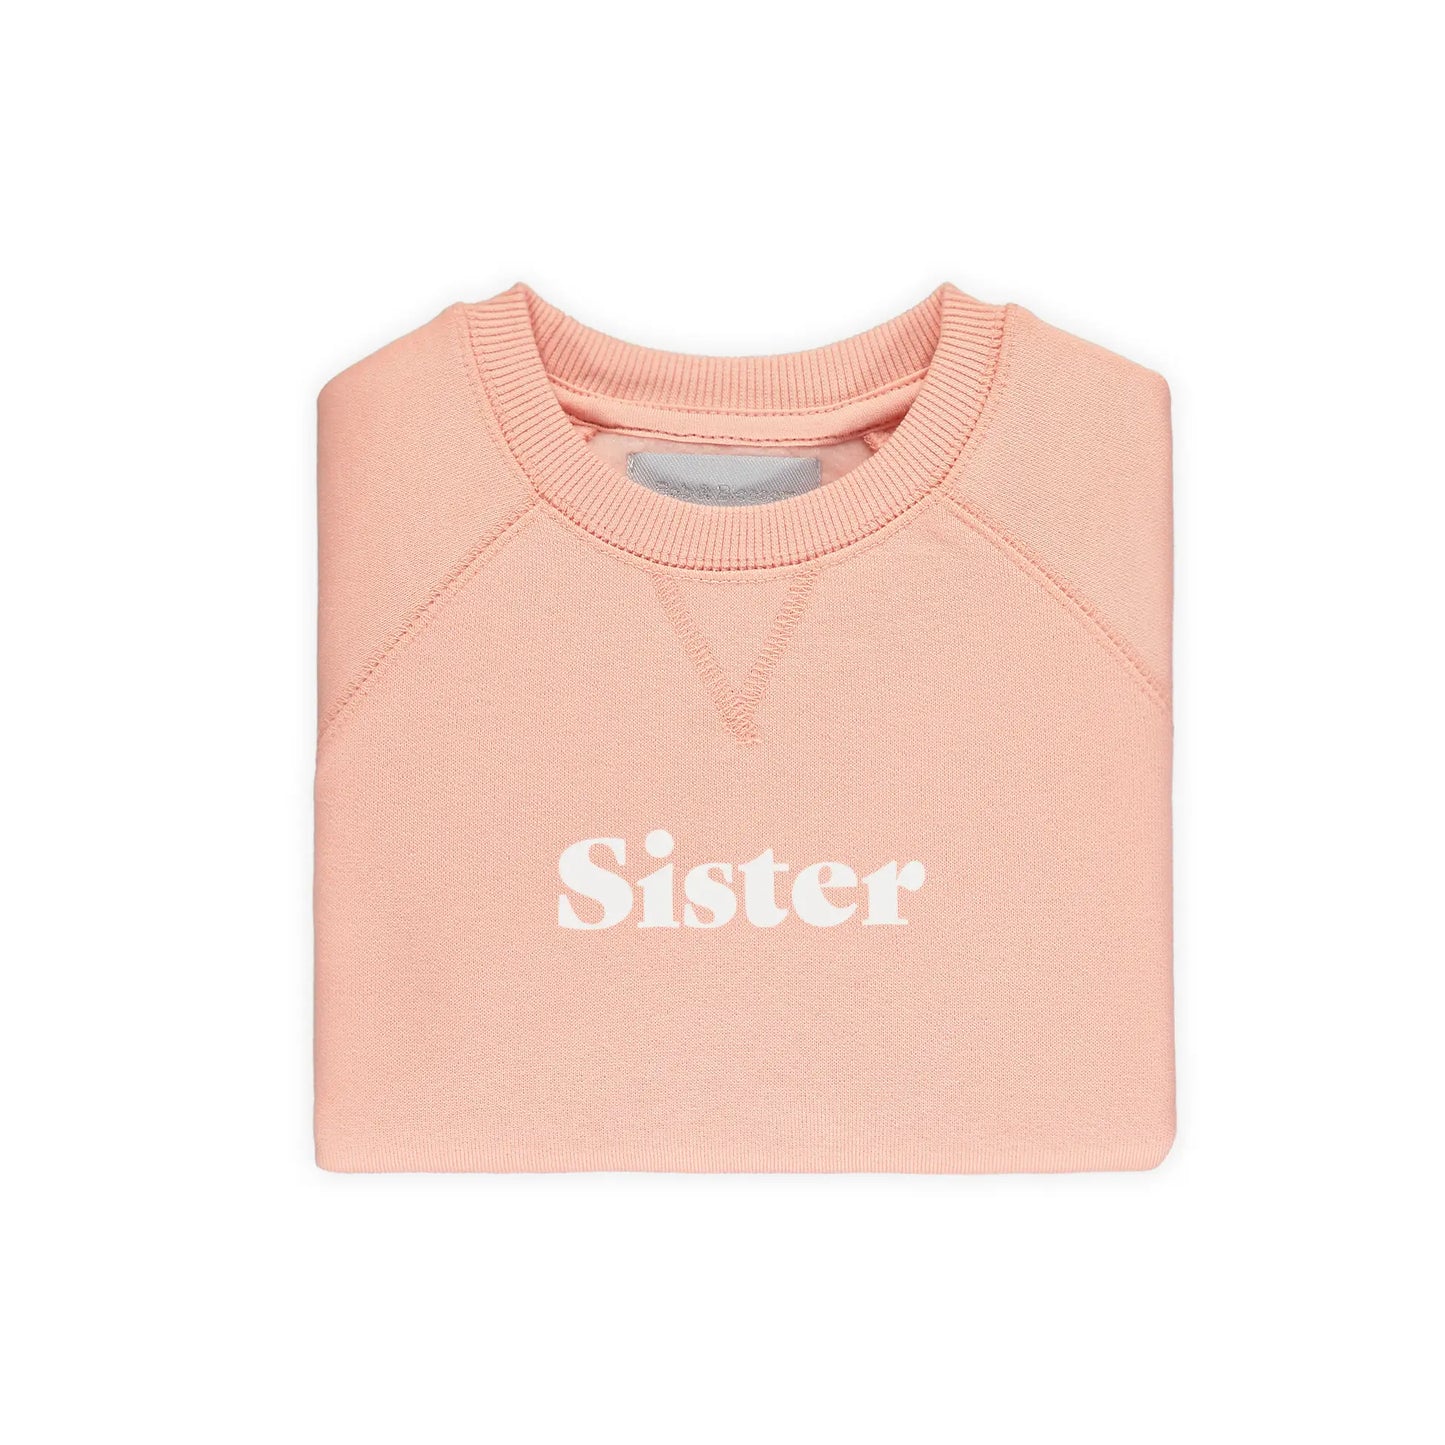 Sister Sweatshirt | Coral Pink